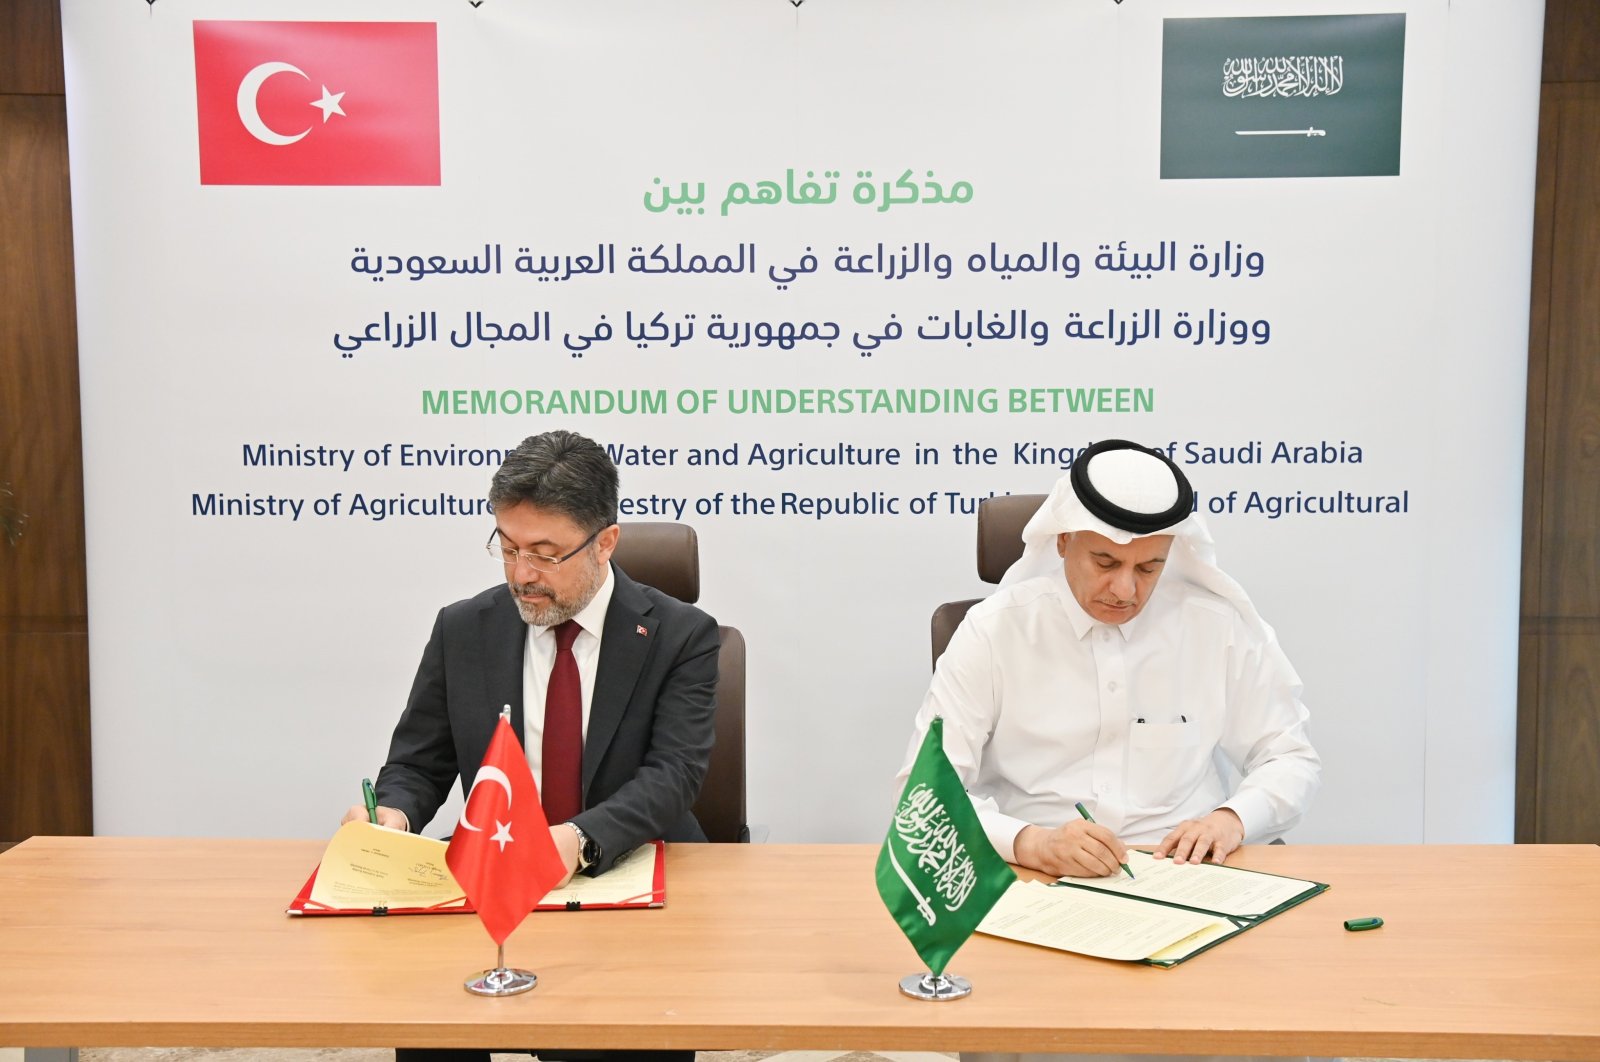 وقعت تركيا والمملكة العربية السعودية اتفاقية تعاون في مجال الزراعة